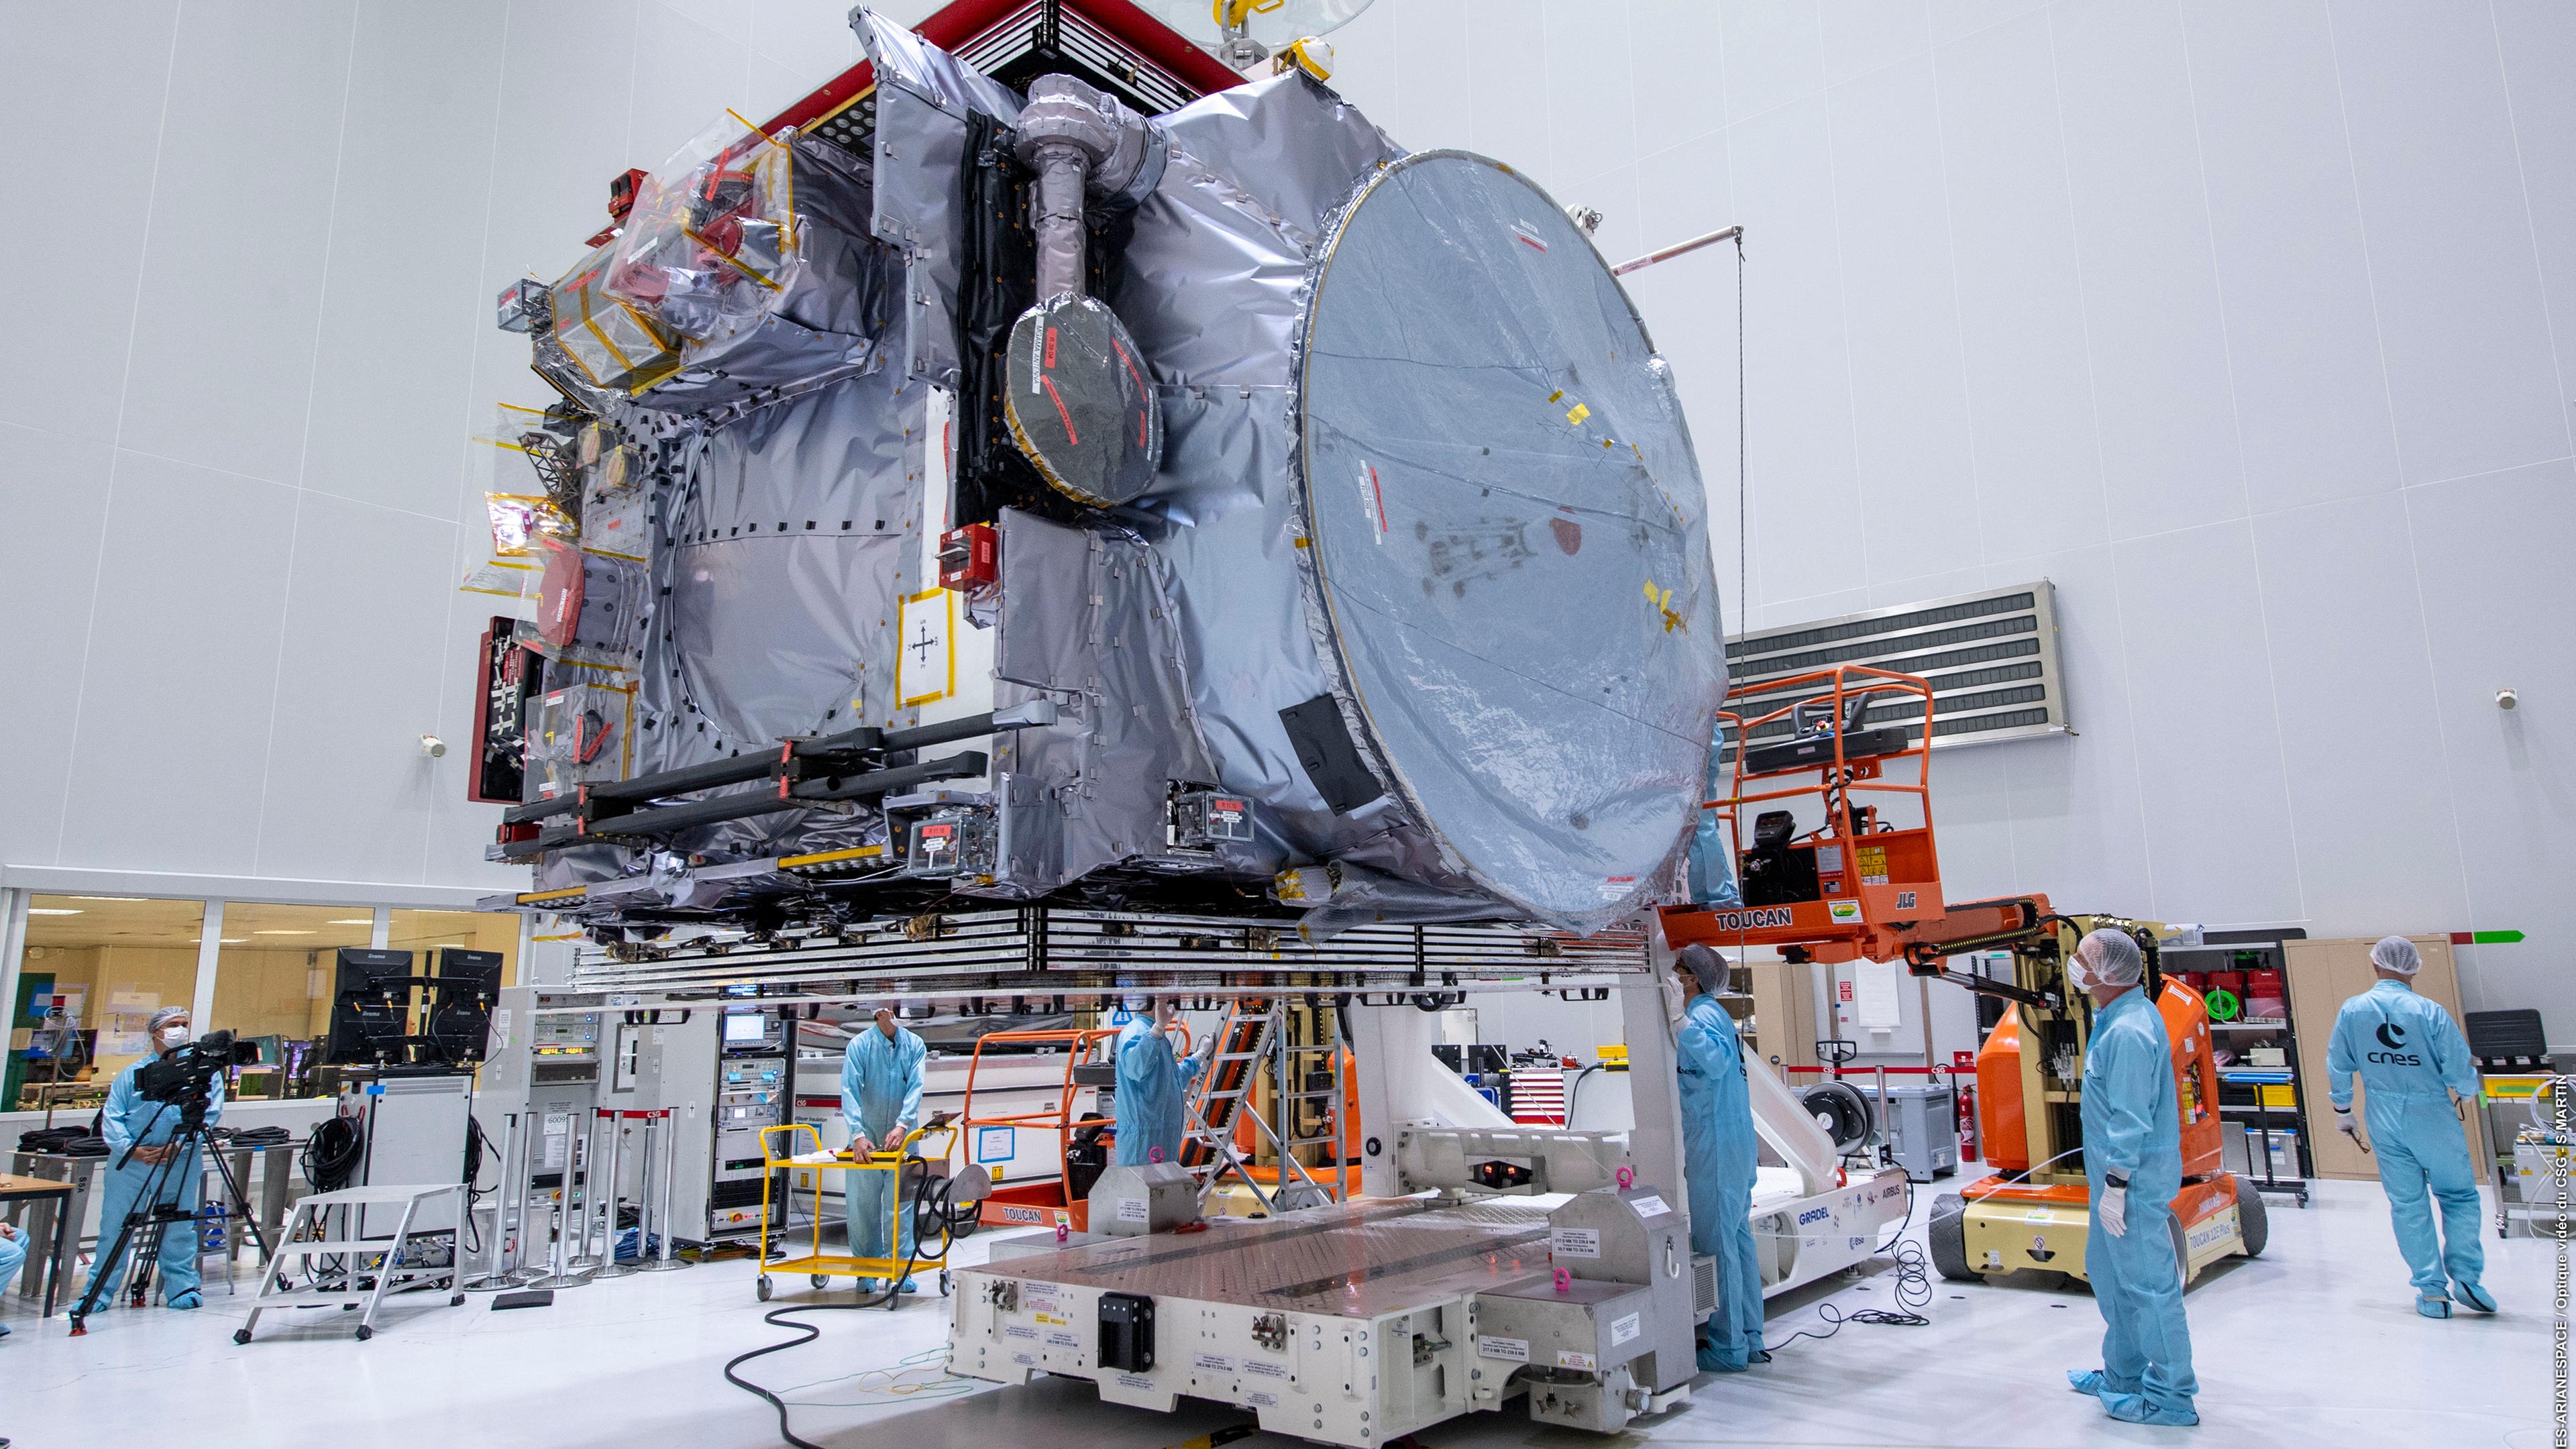 Frankreich, Kourou: Die Sonde "Juice" wird auf dem europäischen Weltraumbahnhof in Französisch-Guayana ausgepackt.